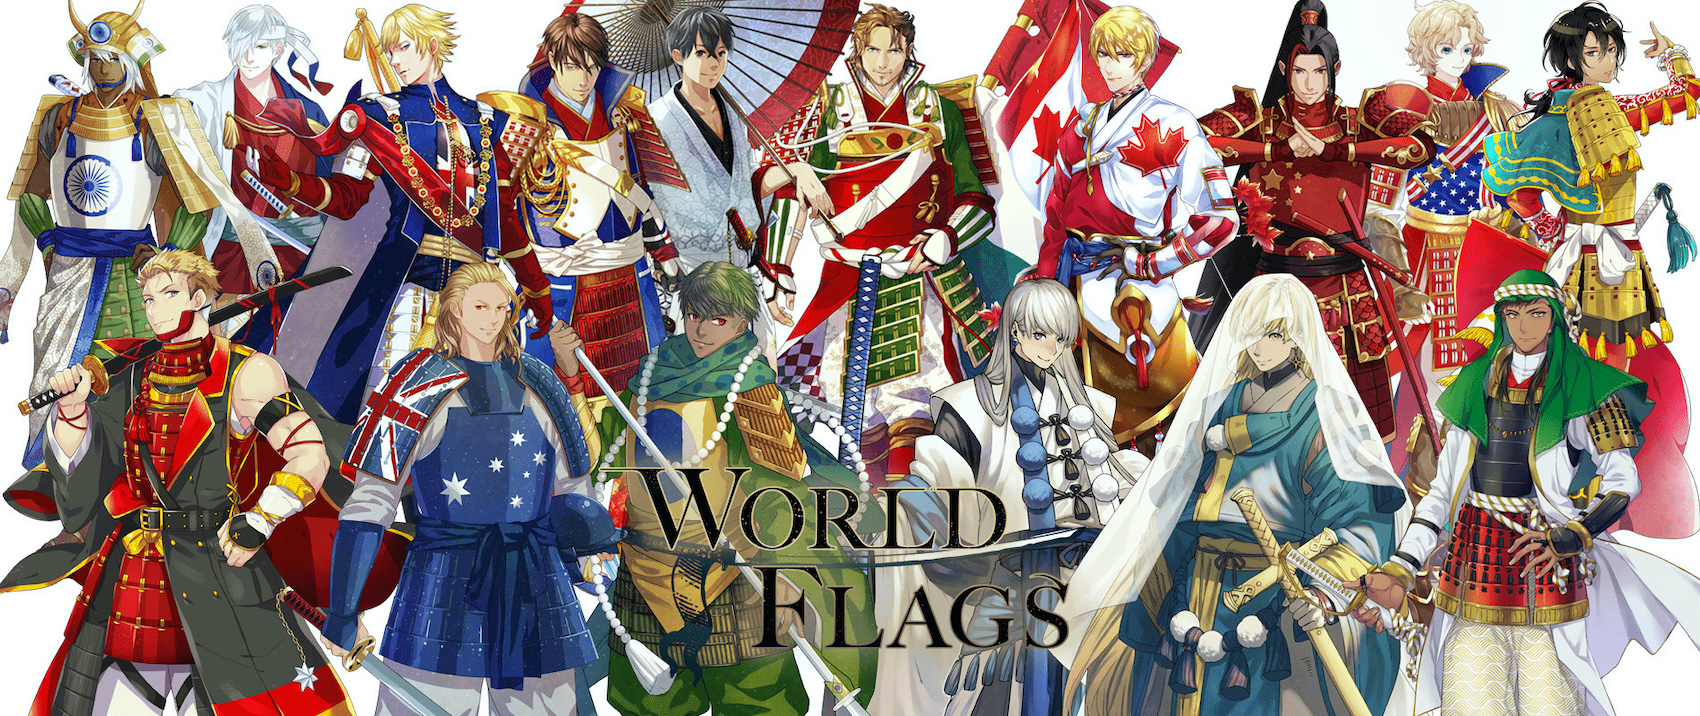 ¿Con qué figura, colores, carácter y atributos representarías cada país del mundo? Unos artistas japoneses han reimaginado las banderas de cada país como guerreros samuráis